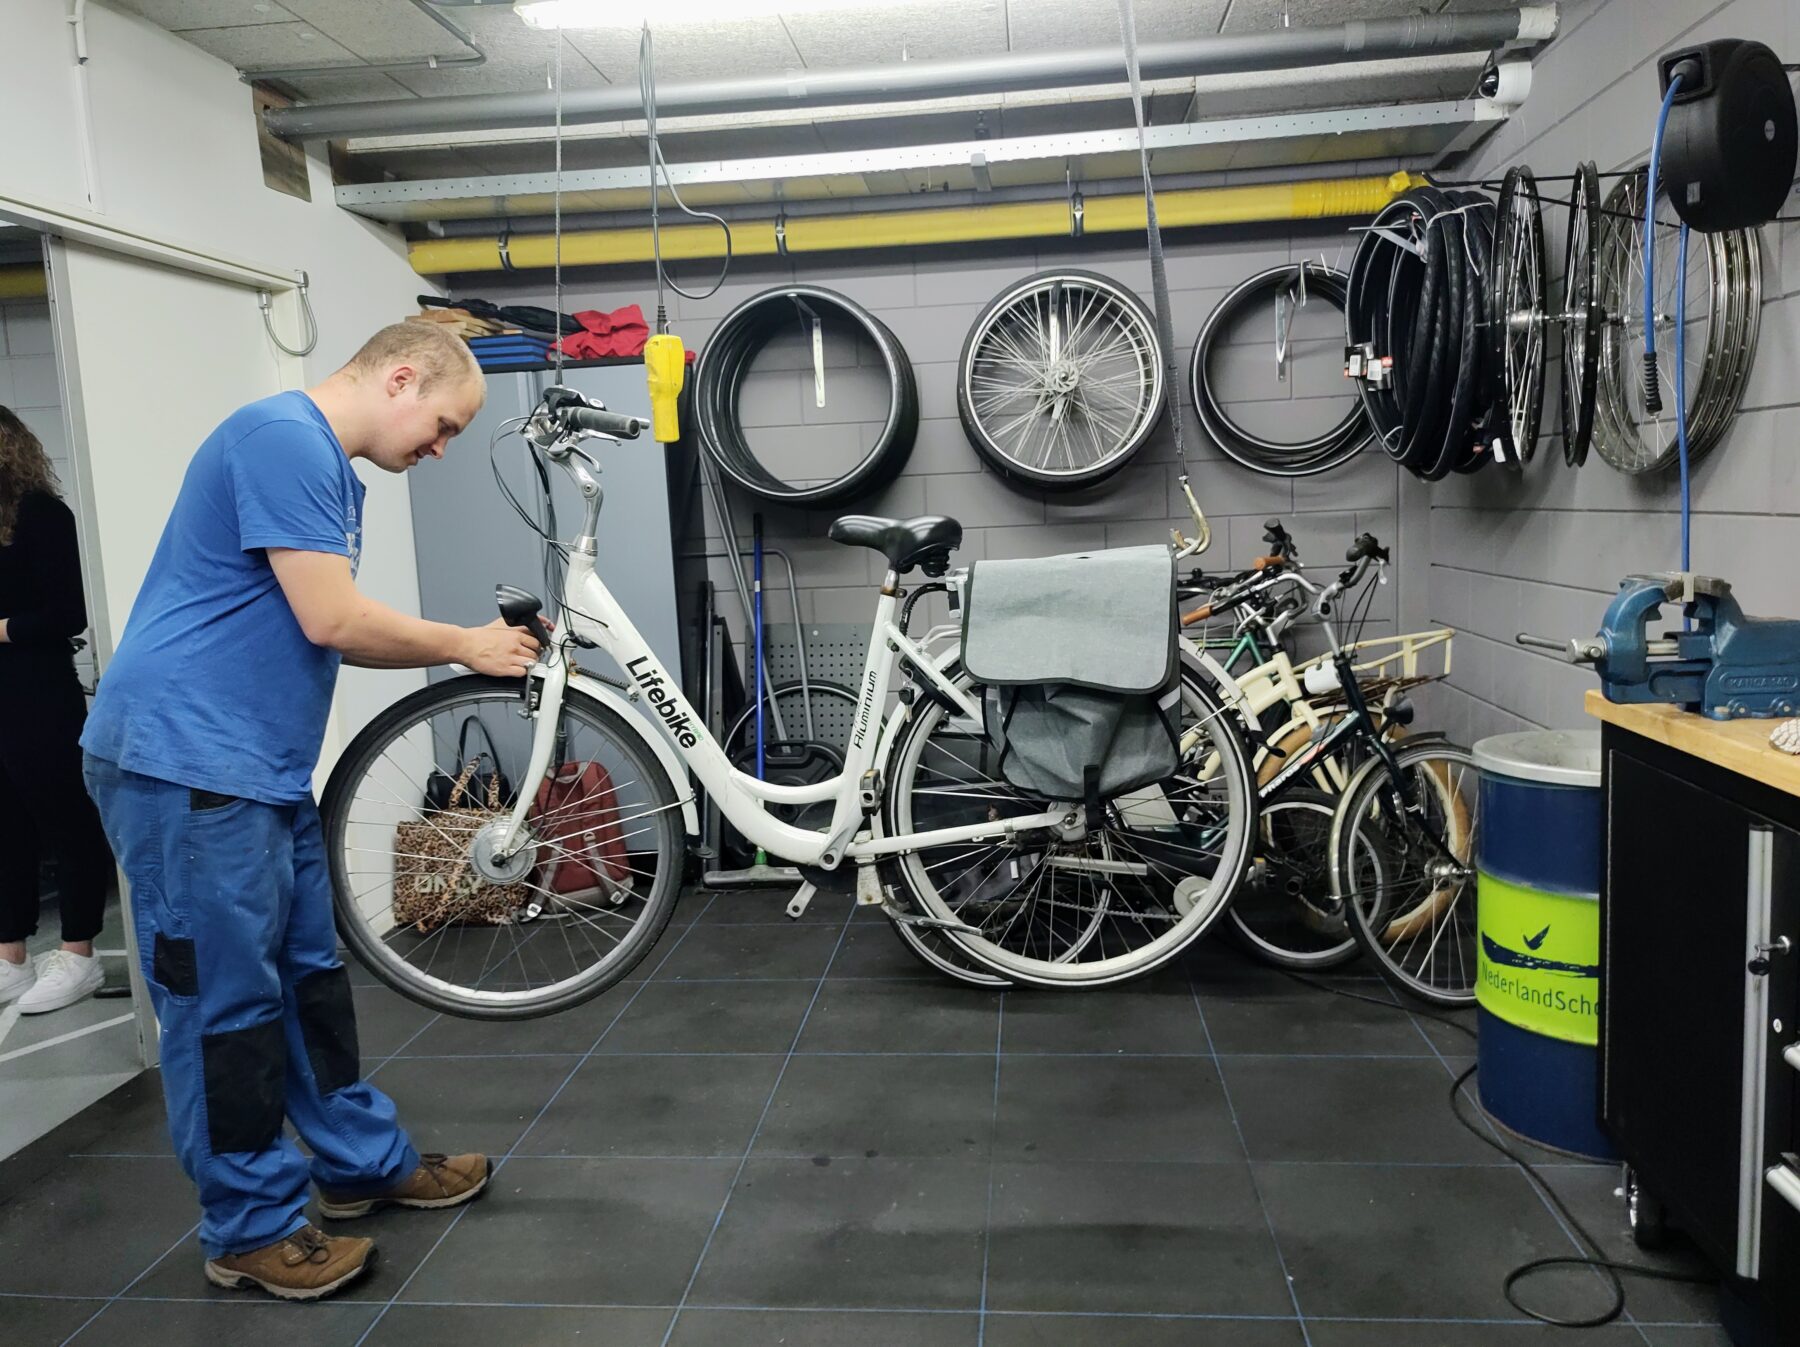 medewerker repareert fiets